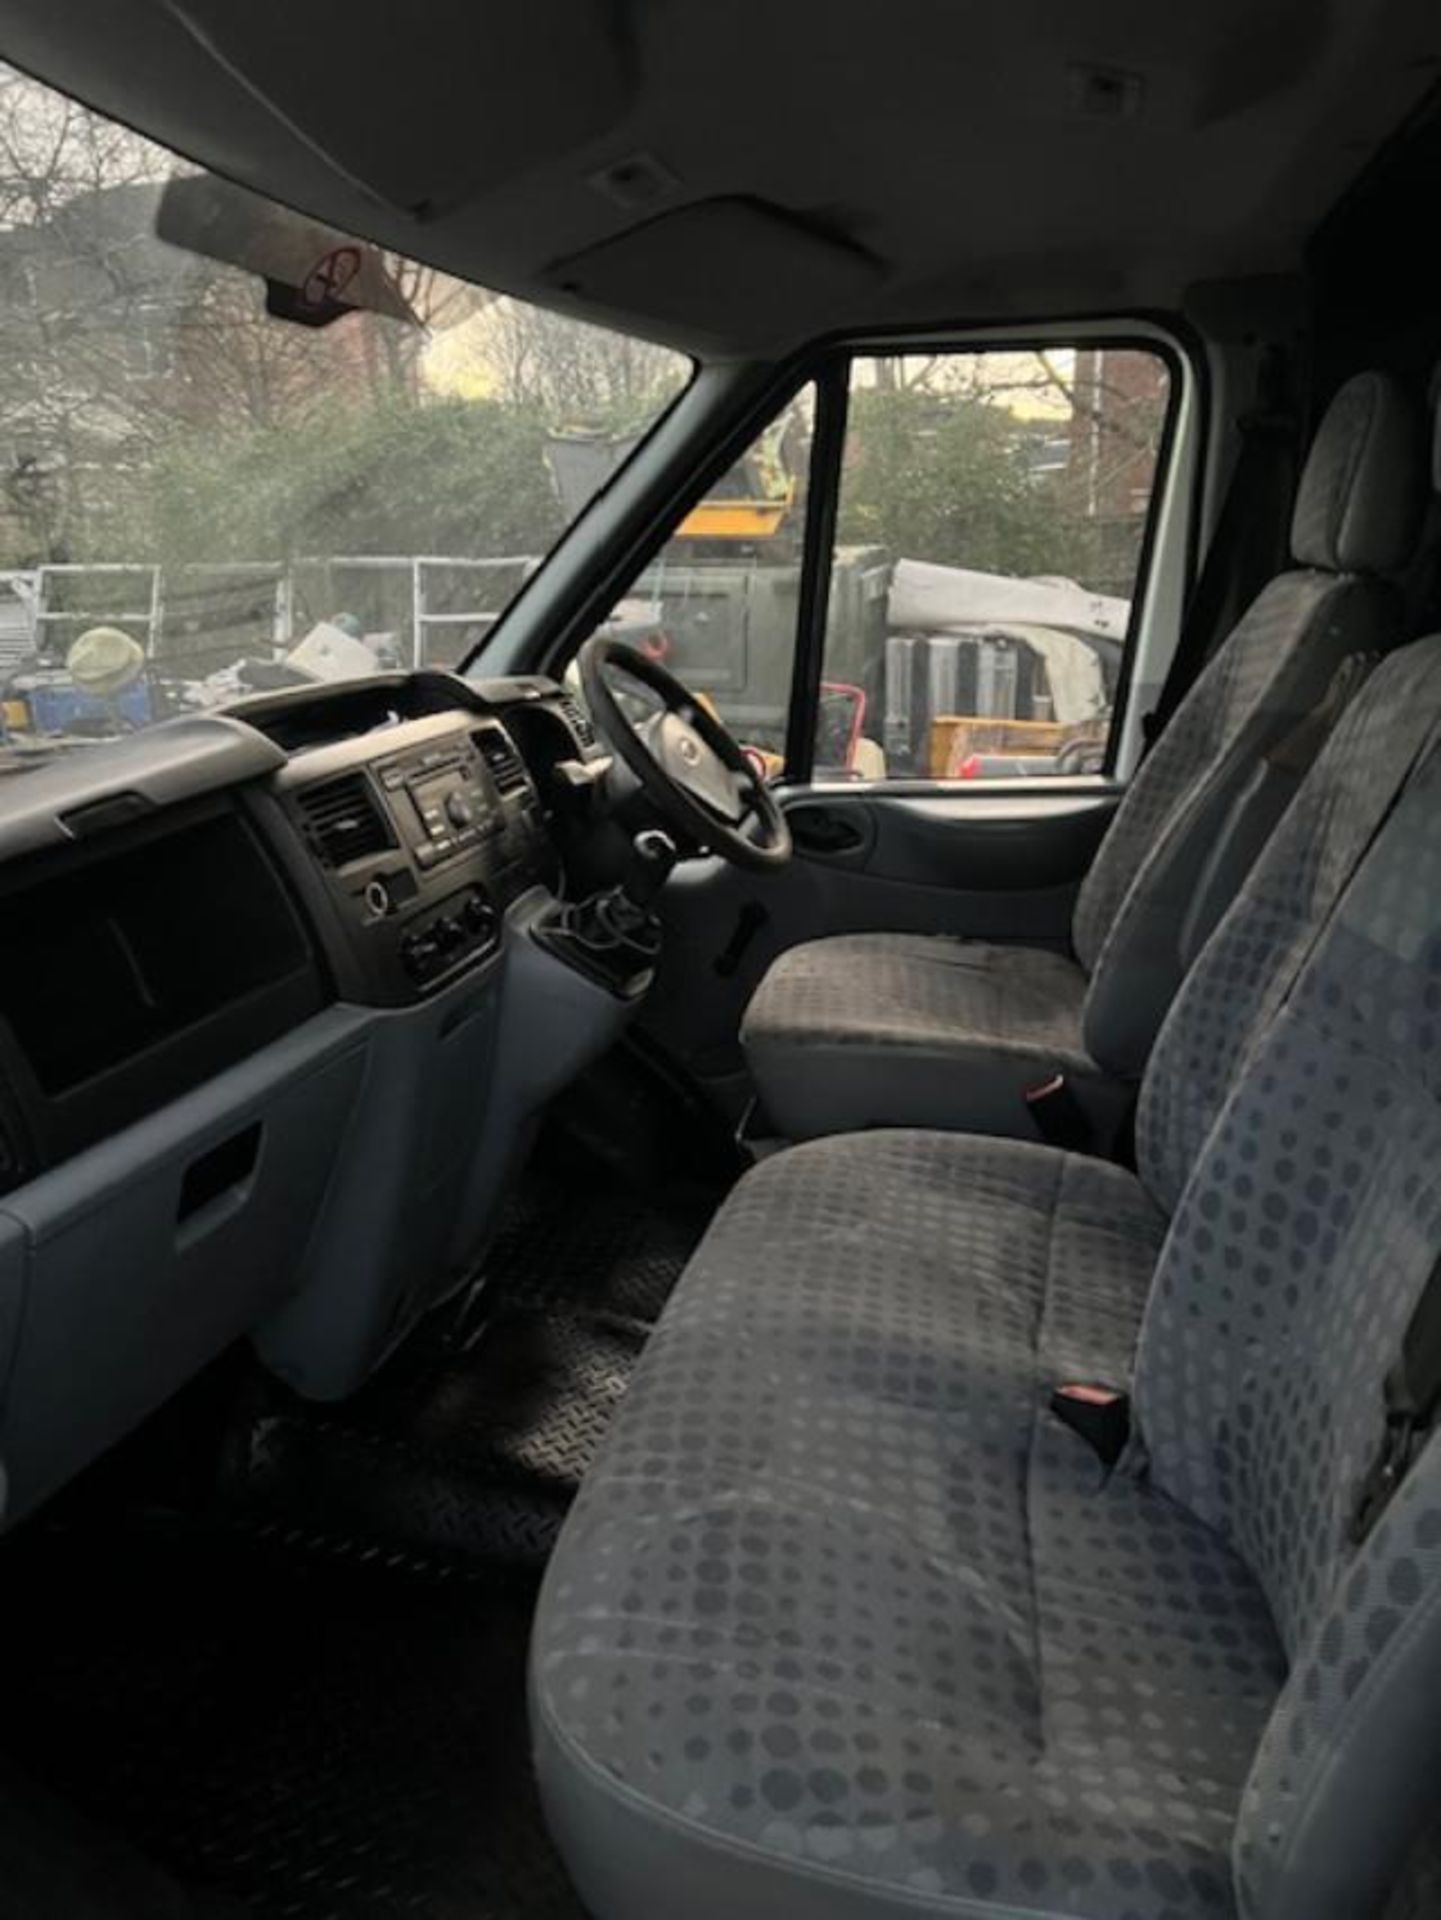 2008, Ford Transit Van - Image 8 of 16